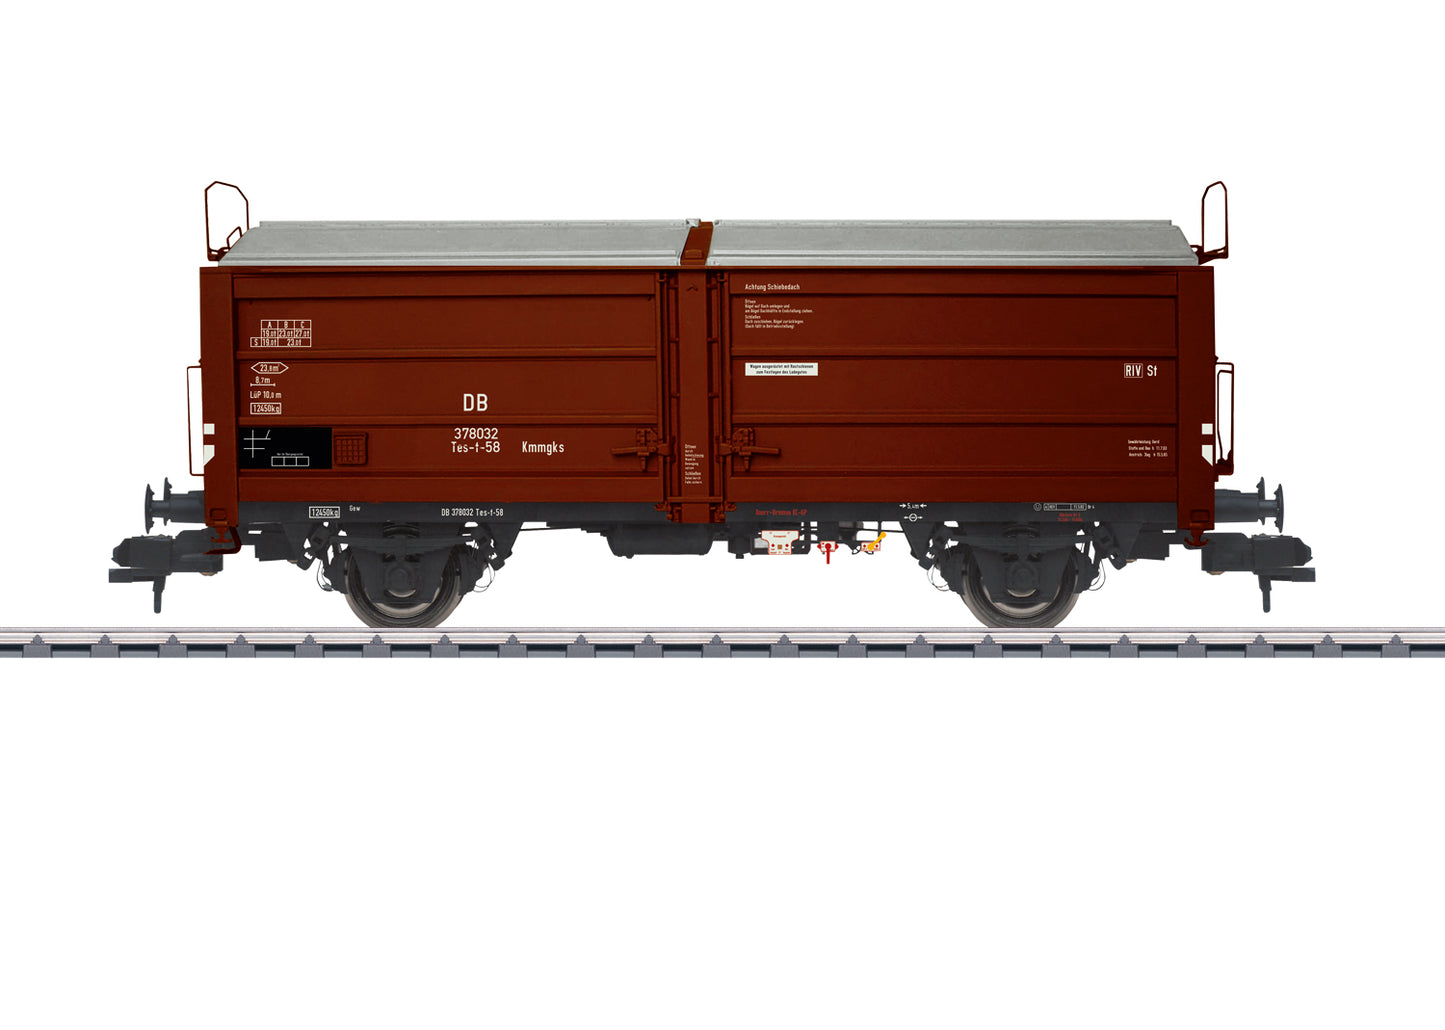 Marklin 1 58378 DB Tes-t 58 Freight Car 2023 New Item 